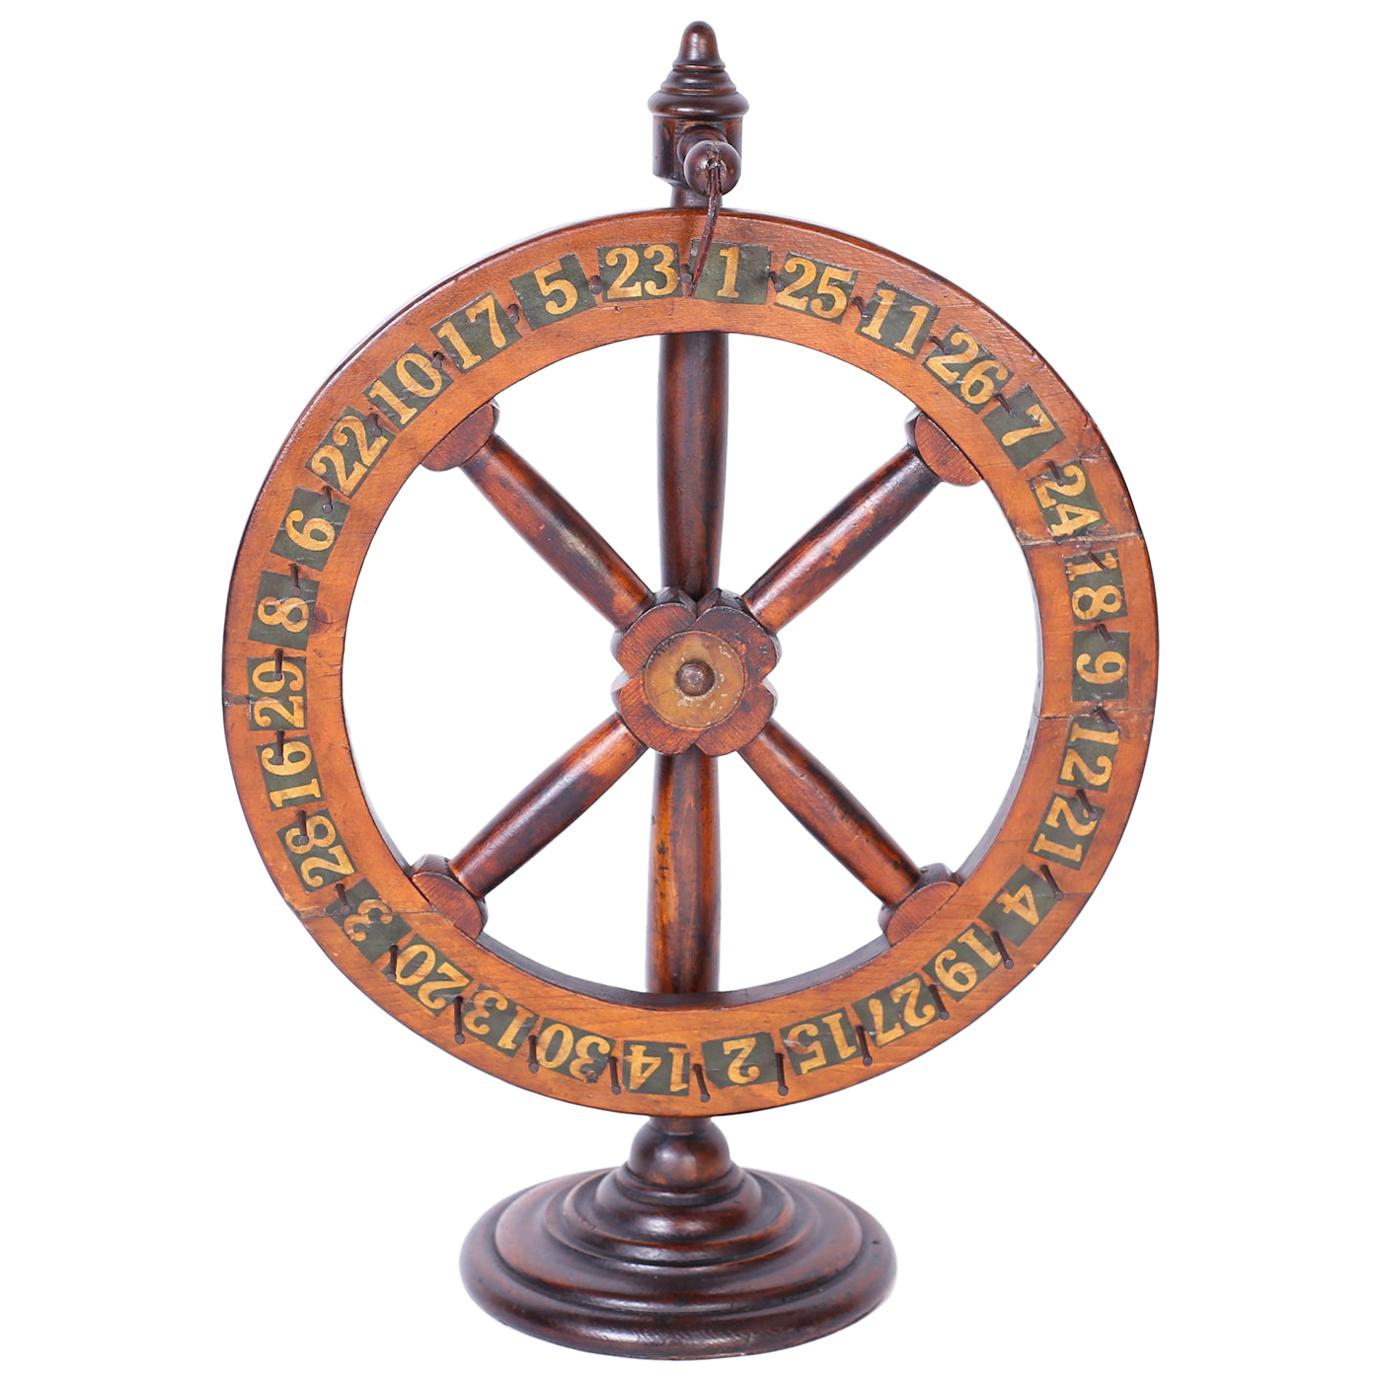 Antique English Gaming Wheel